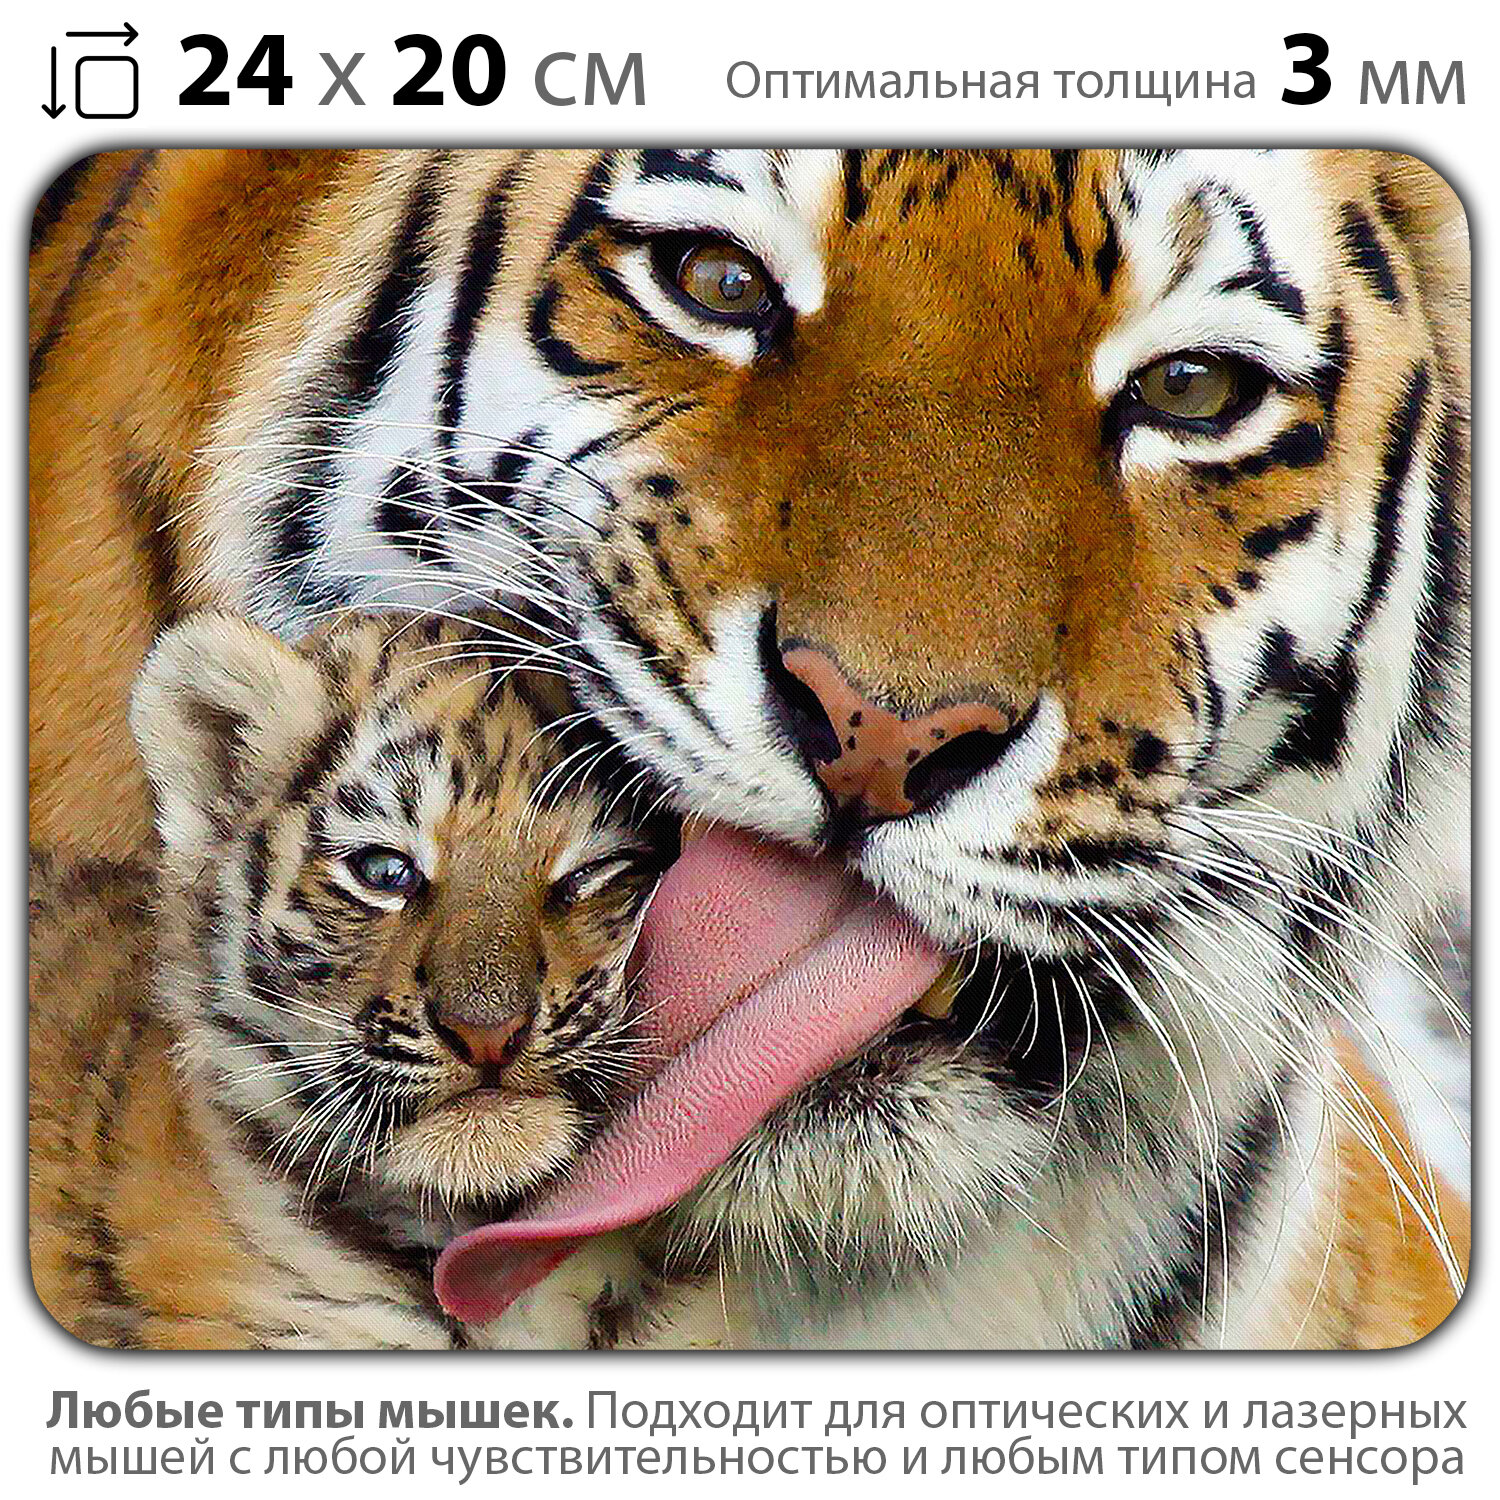 Коврик для мыши "Тигрица с тигрёнком" (24 x 20 см x 3 мм)